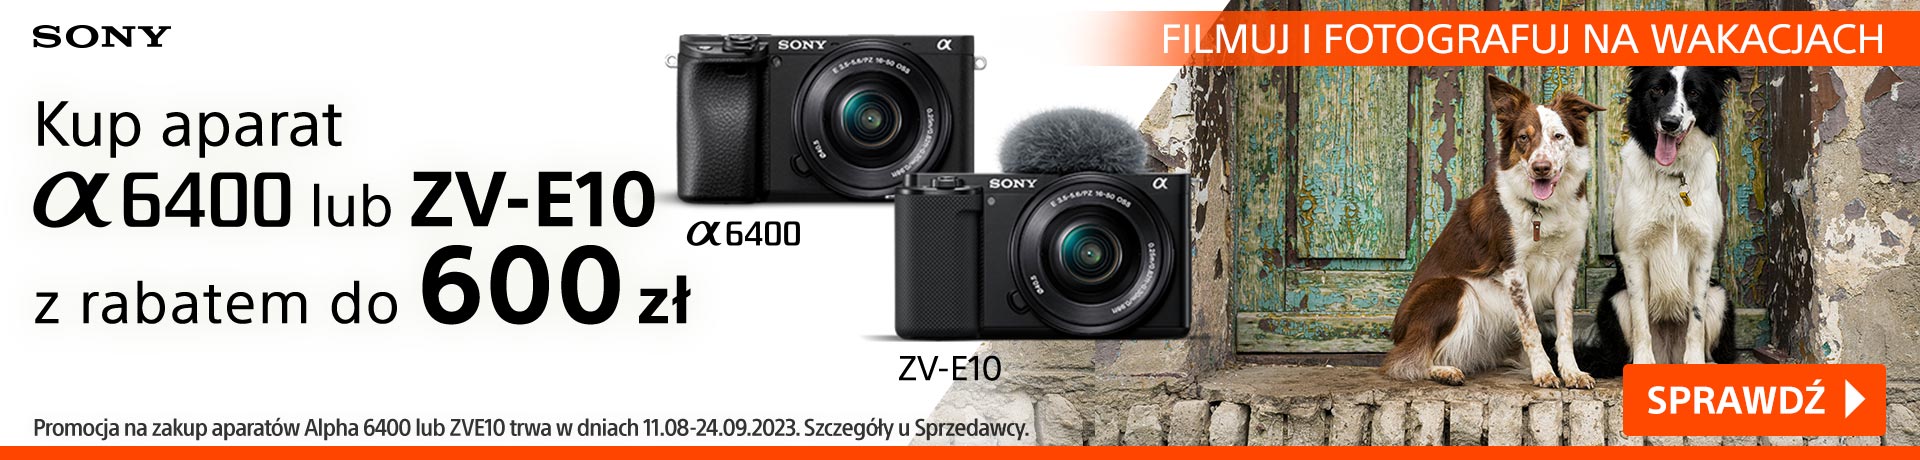 Rabat do 600 zł na aparaty Sony ZV-E10 i A6400